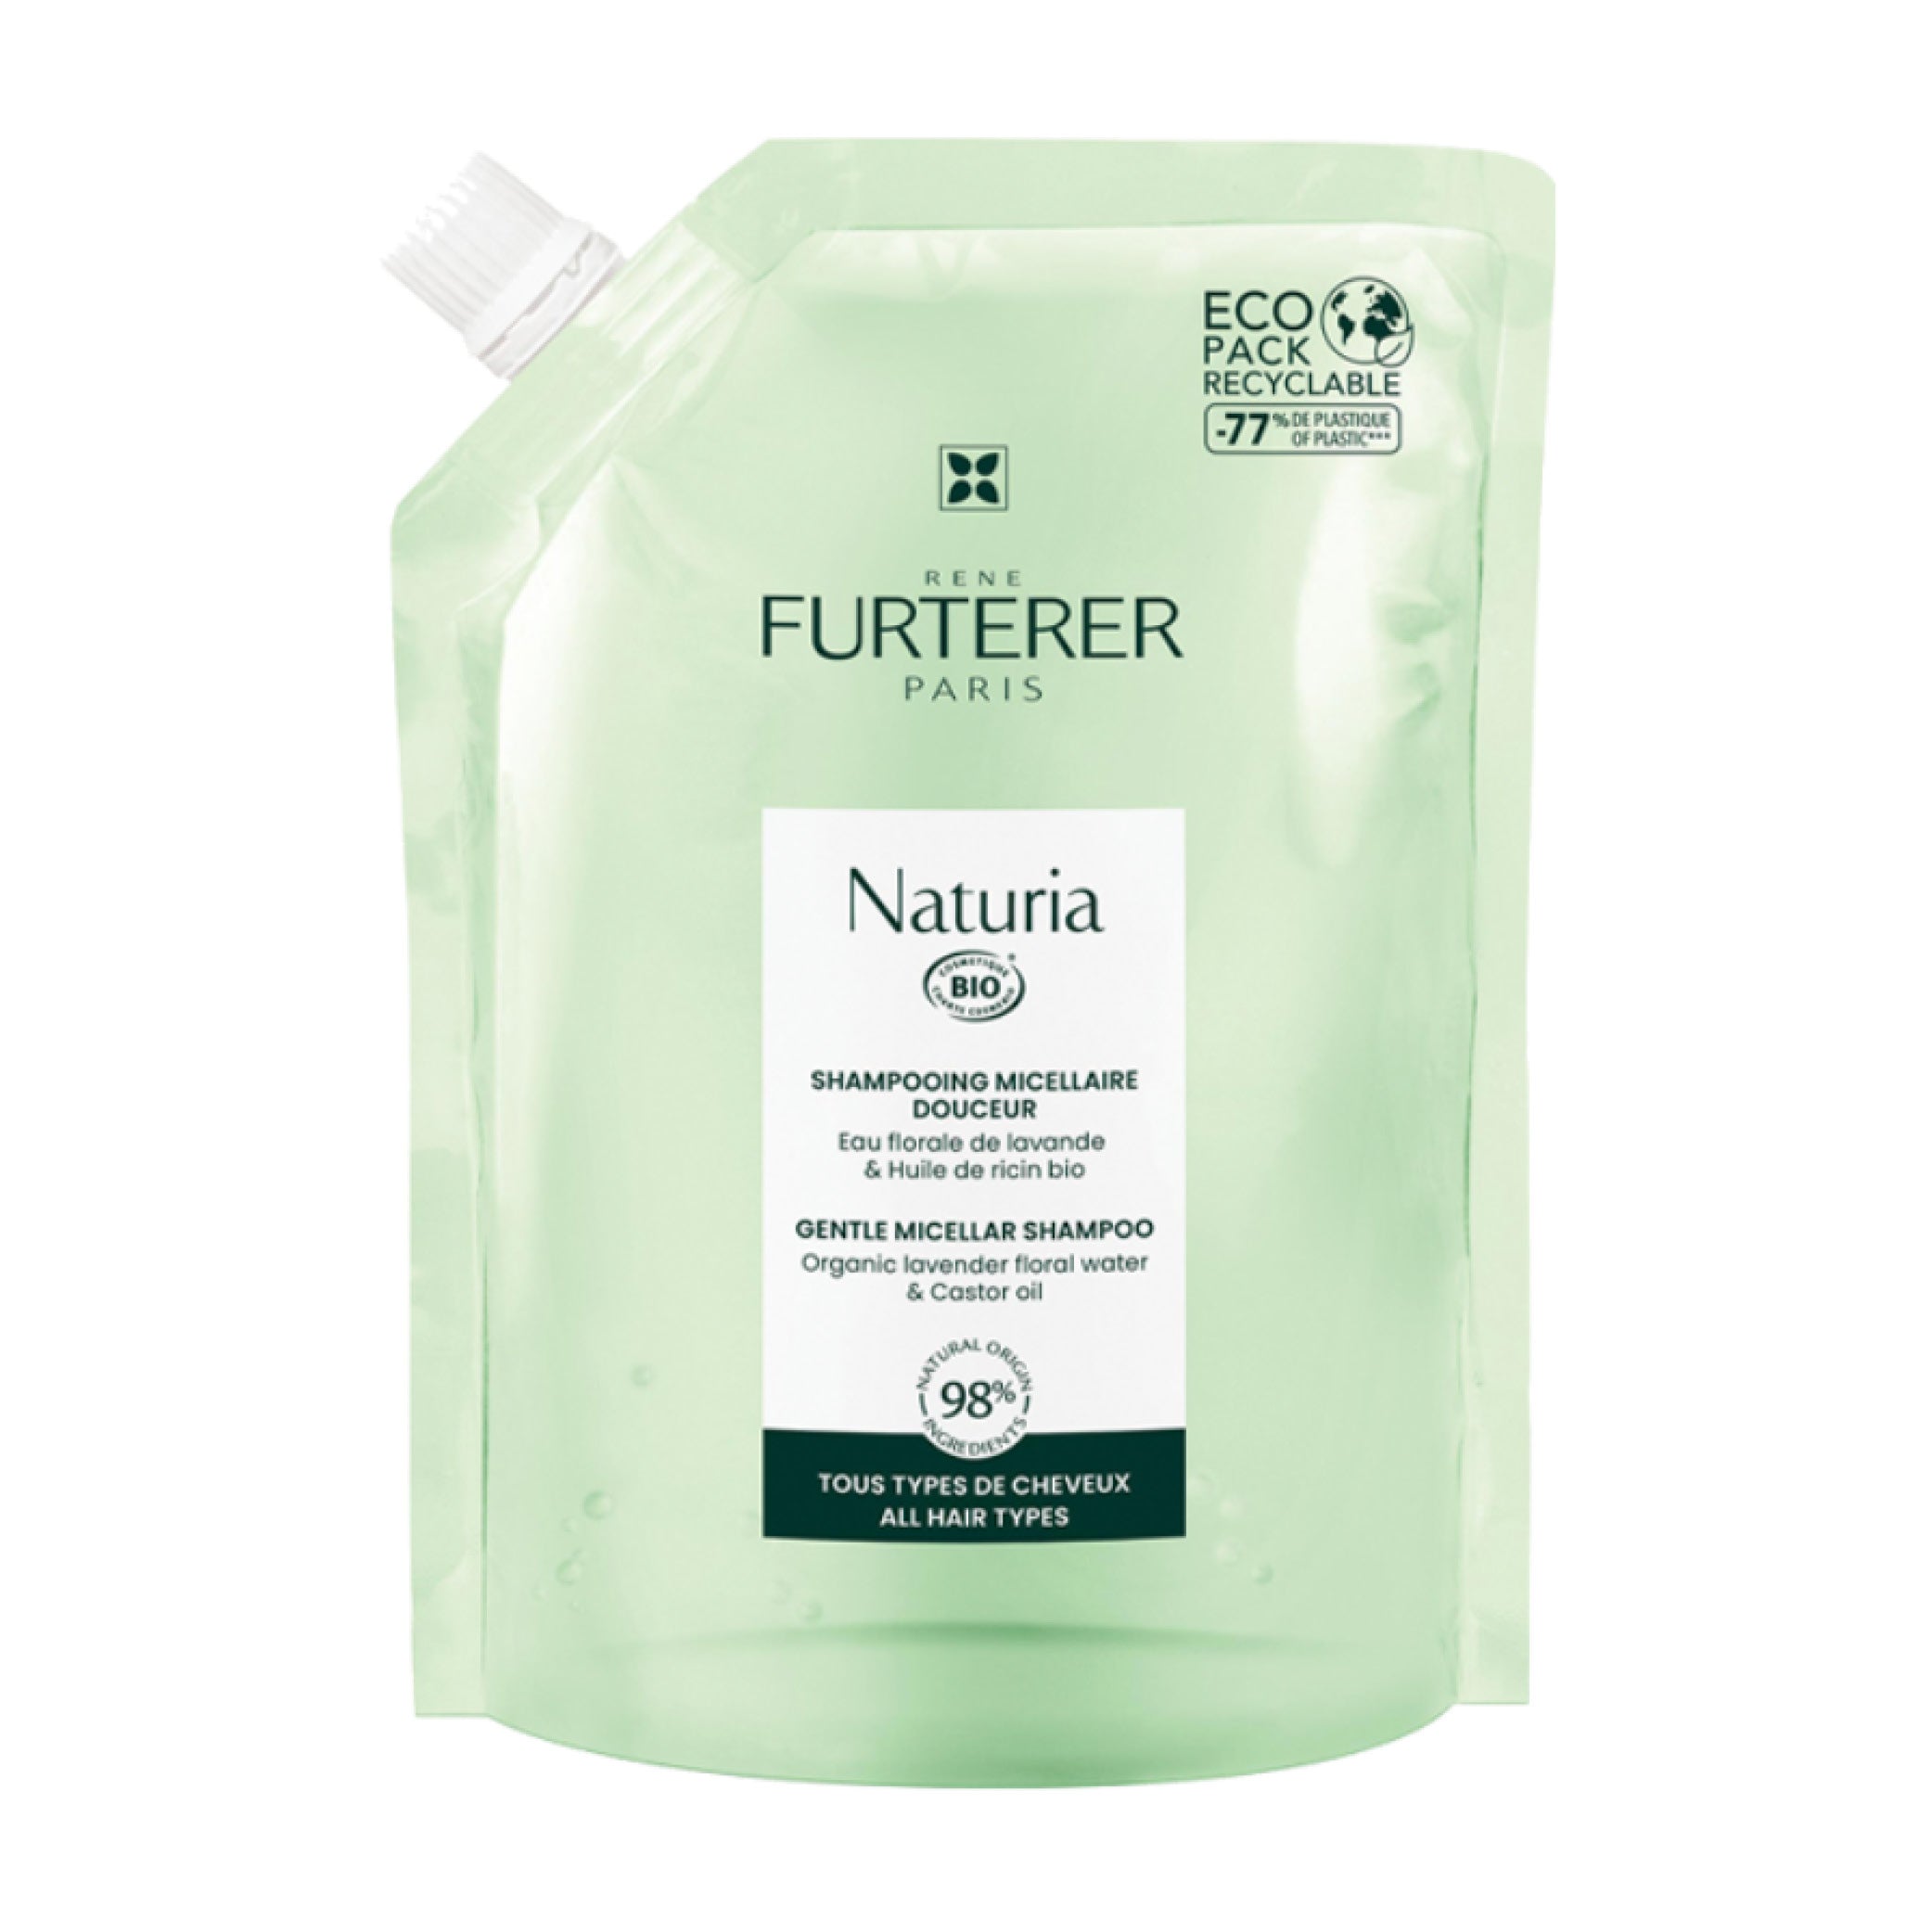 Naturia Gentle Micellar Shampoo Eco-Refill